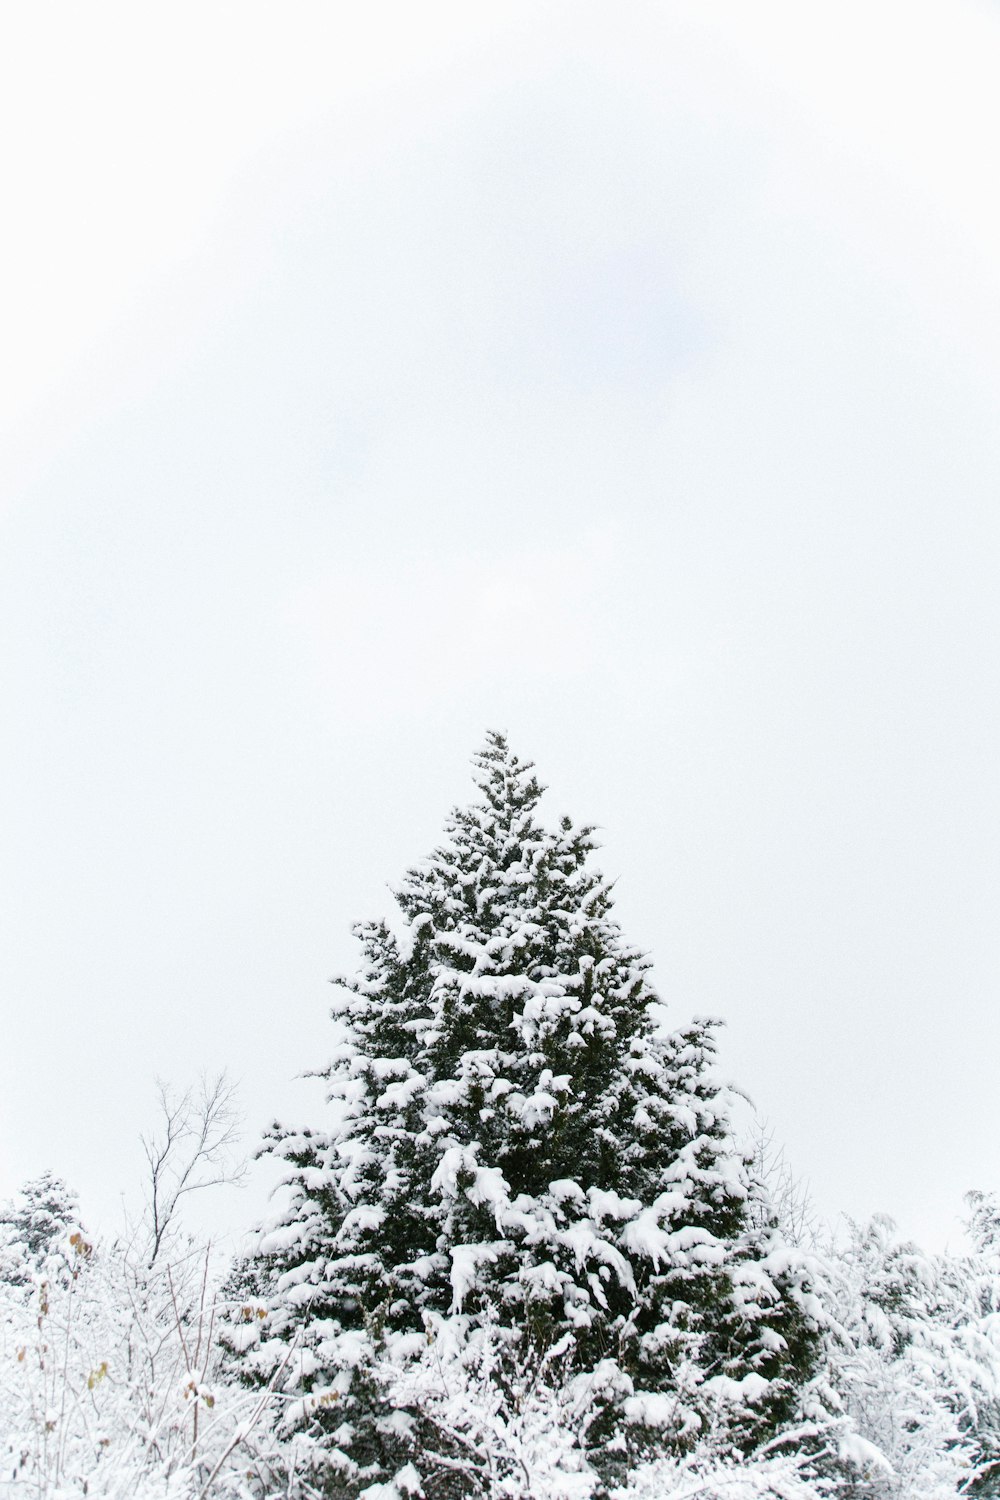 La copa de un árbol cubierto de nieve.